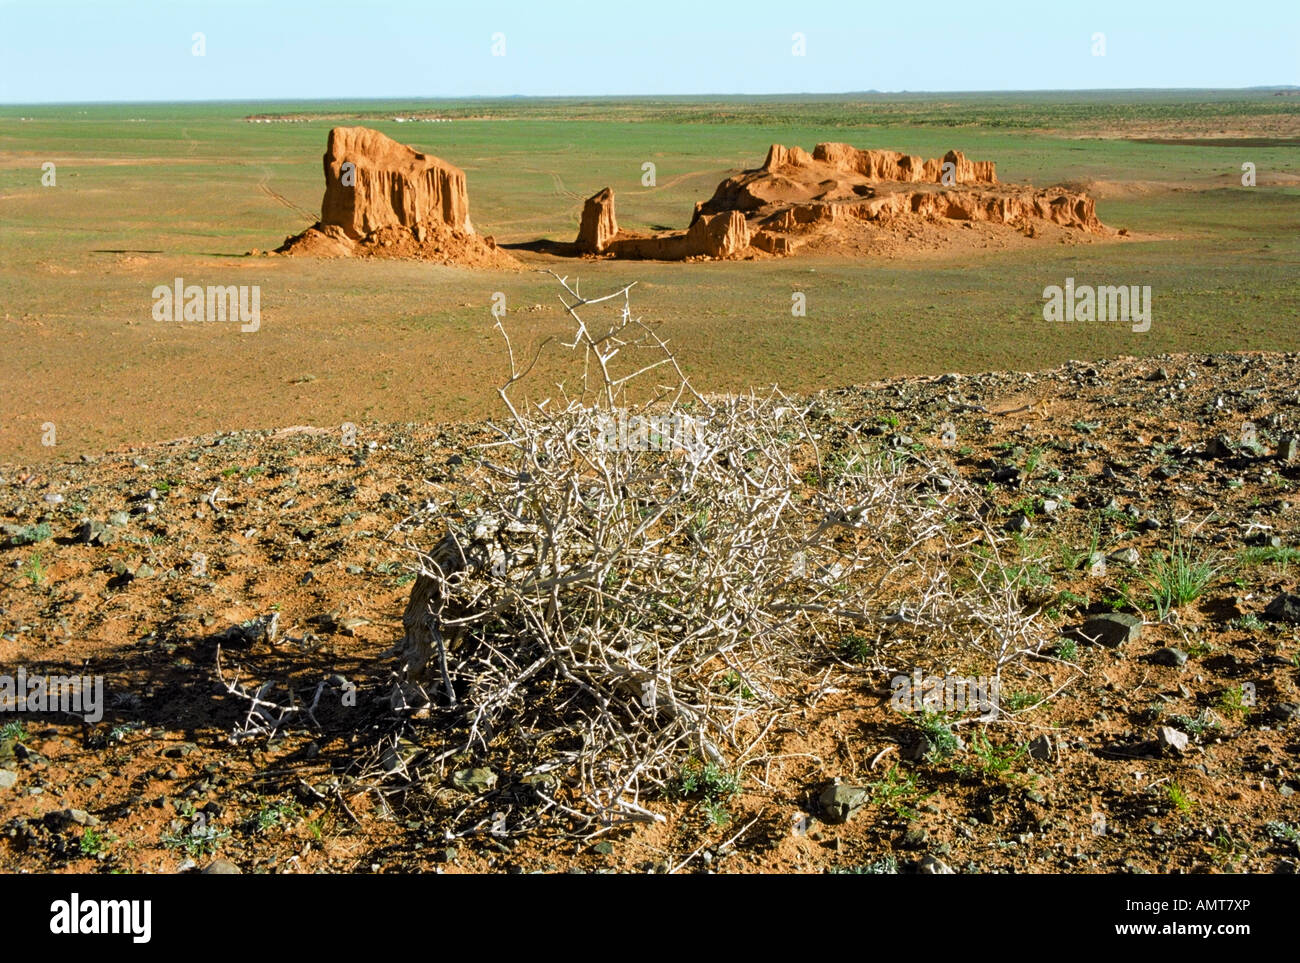 Getrocknete Busch von Tumbleweed und Erosion Formationen von Braun sedimentären Mineralien. Bayan Zag, südliche Wüste Gobi, Mongolei Stockfoto